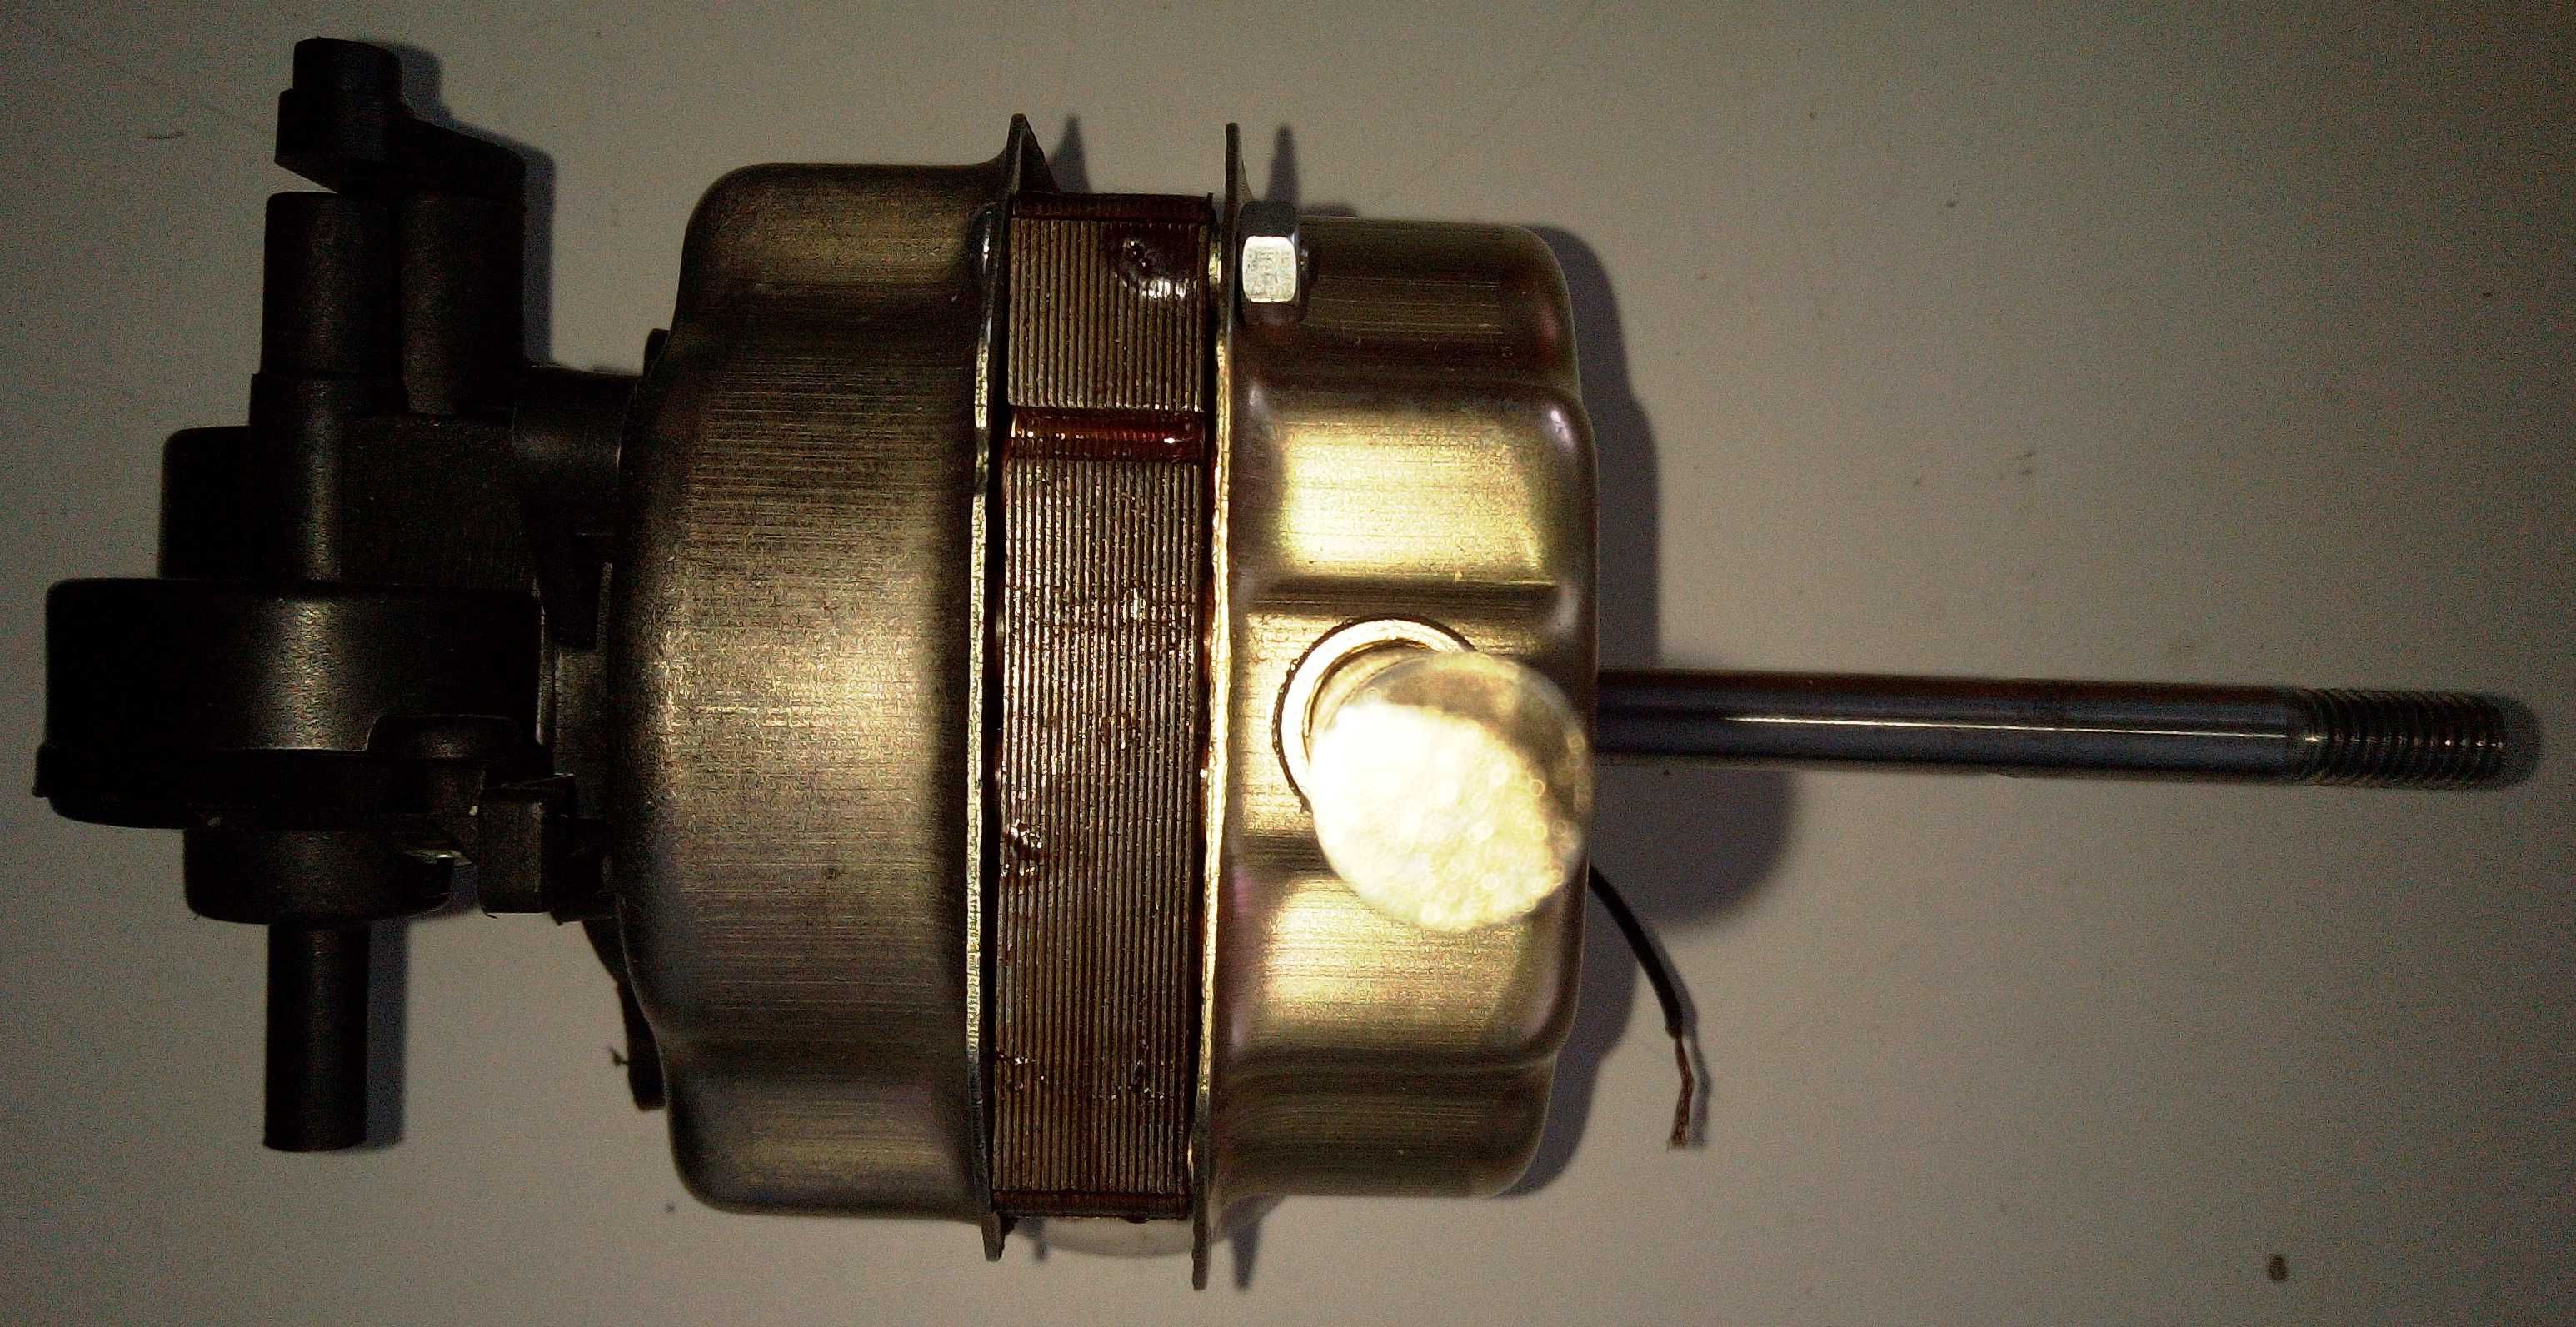 Двигатель (электромотор) бытового напольного вентилятора